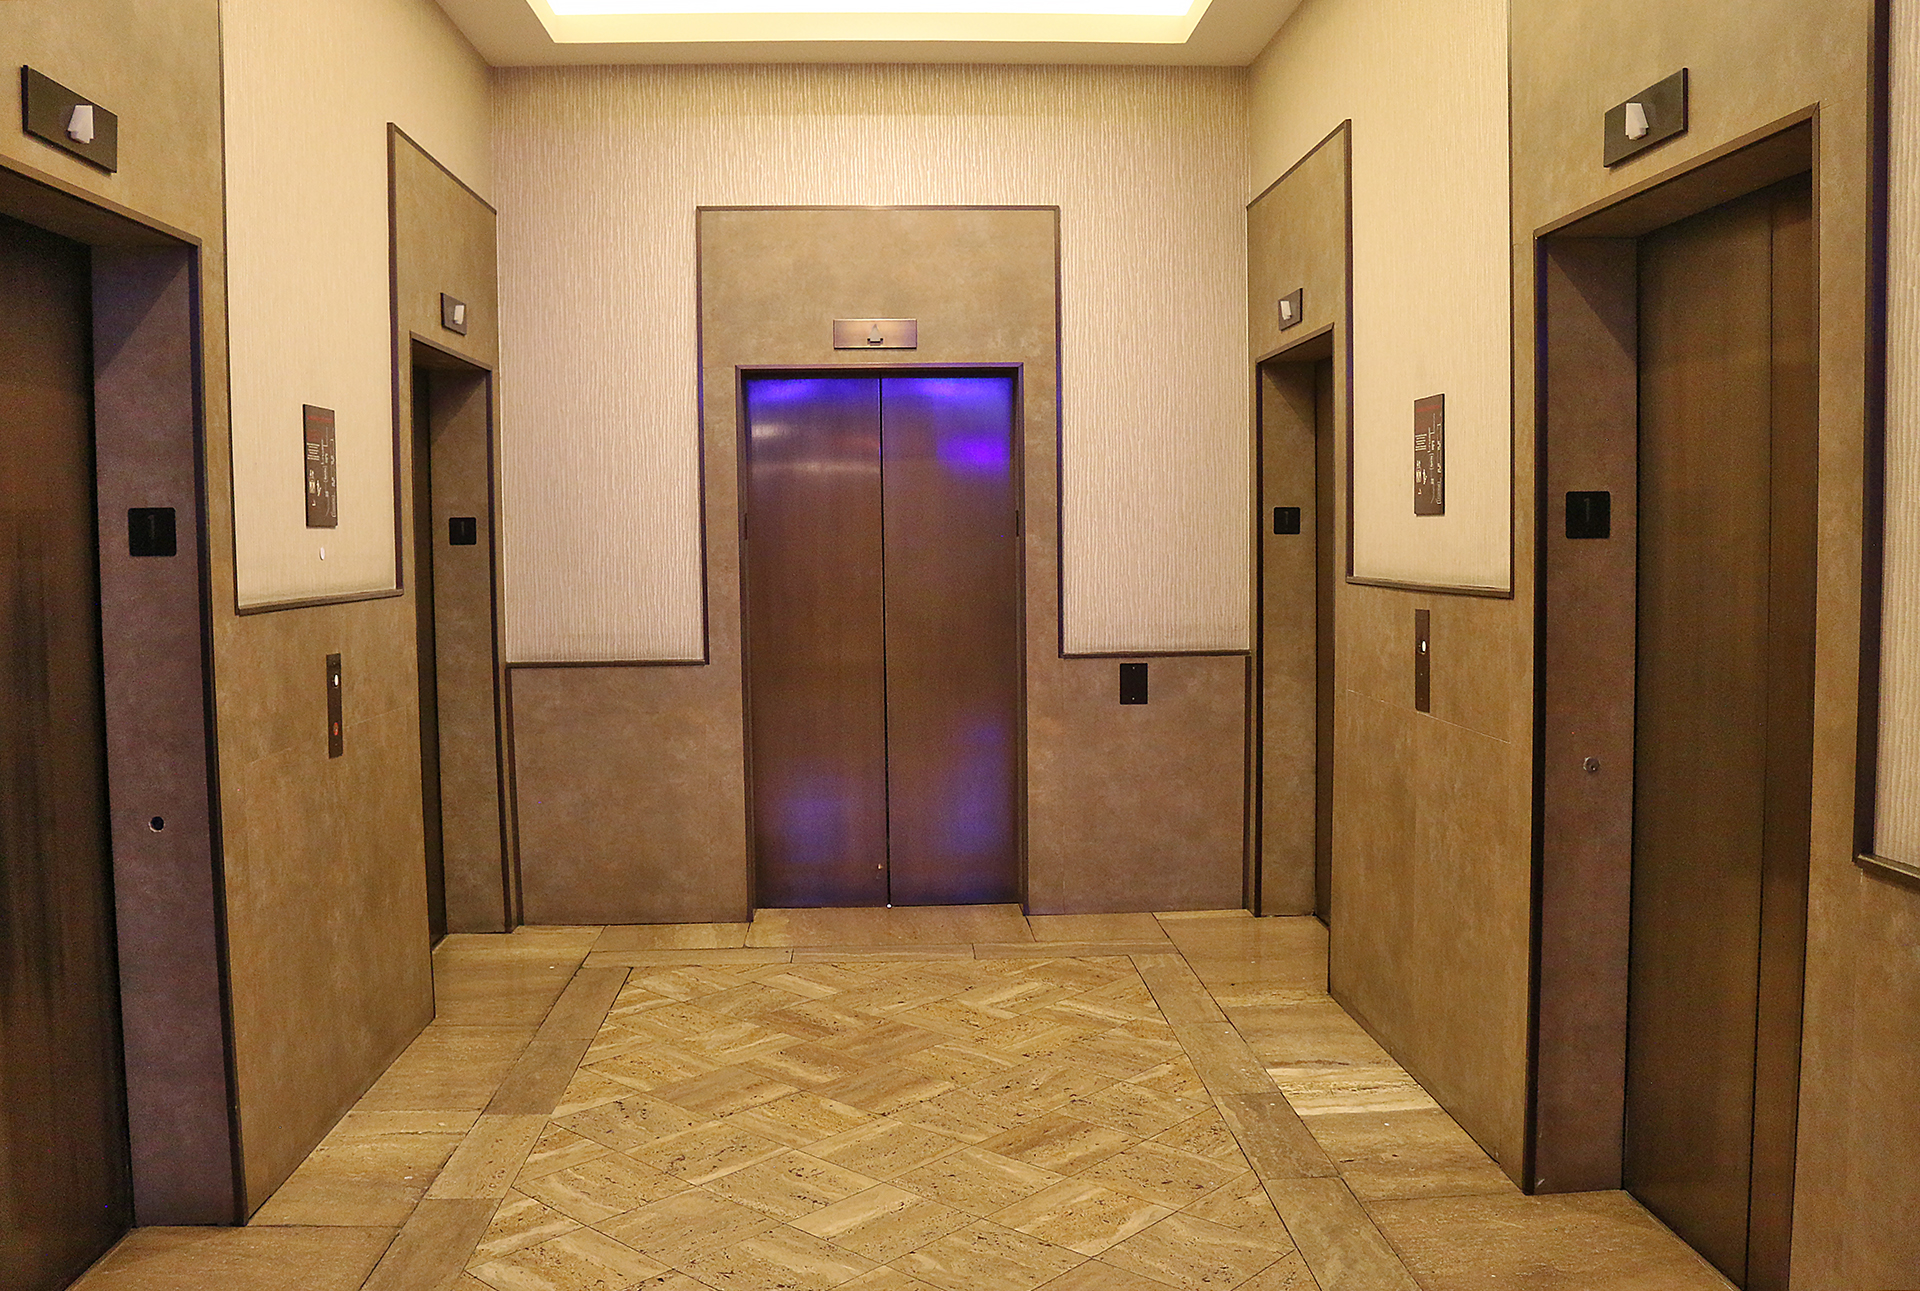 an elevator doors in a room